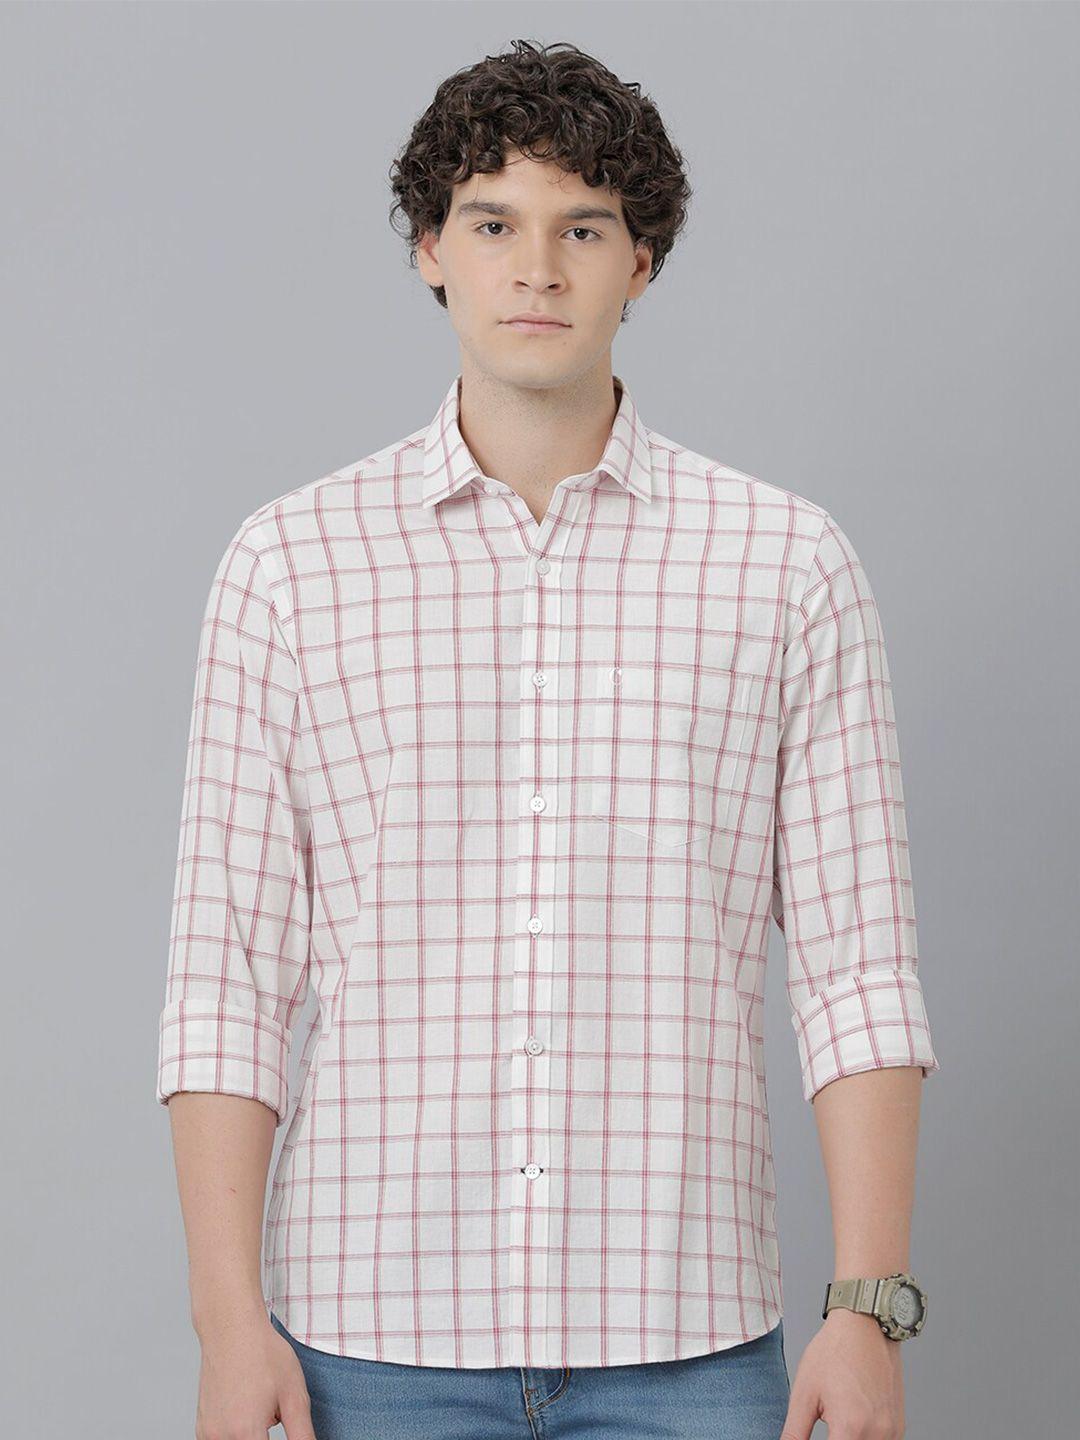 cavallo-by-linen-club-spread-collar-long-sleeves-checked-casual-linen-shirt